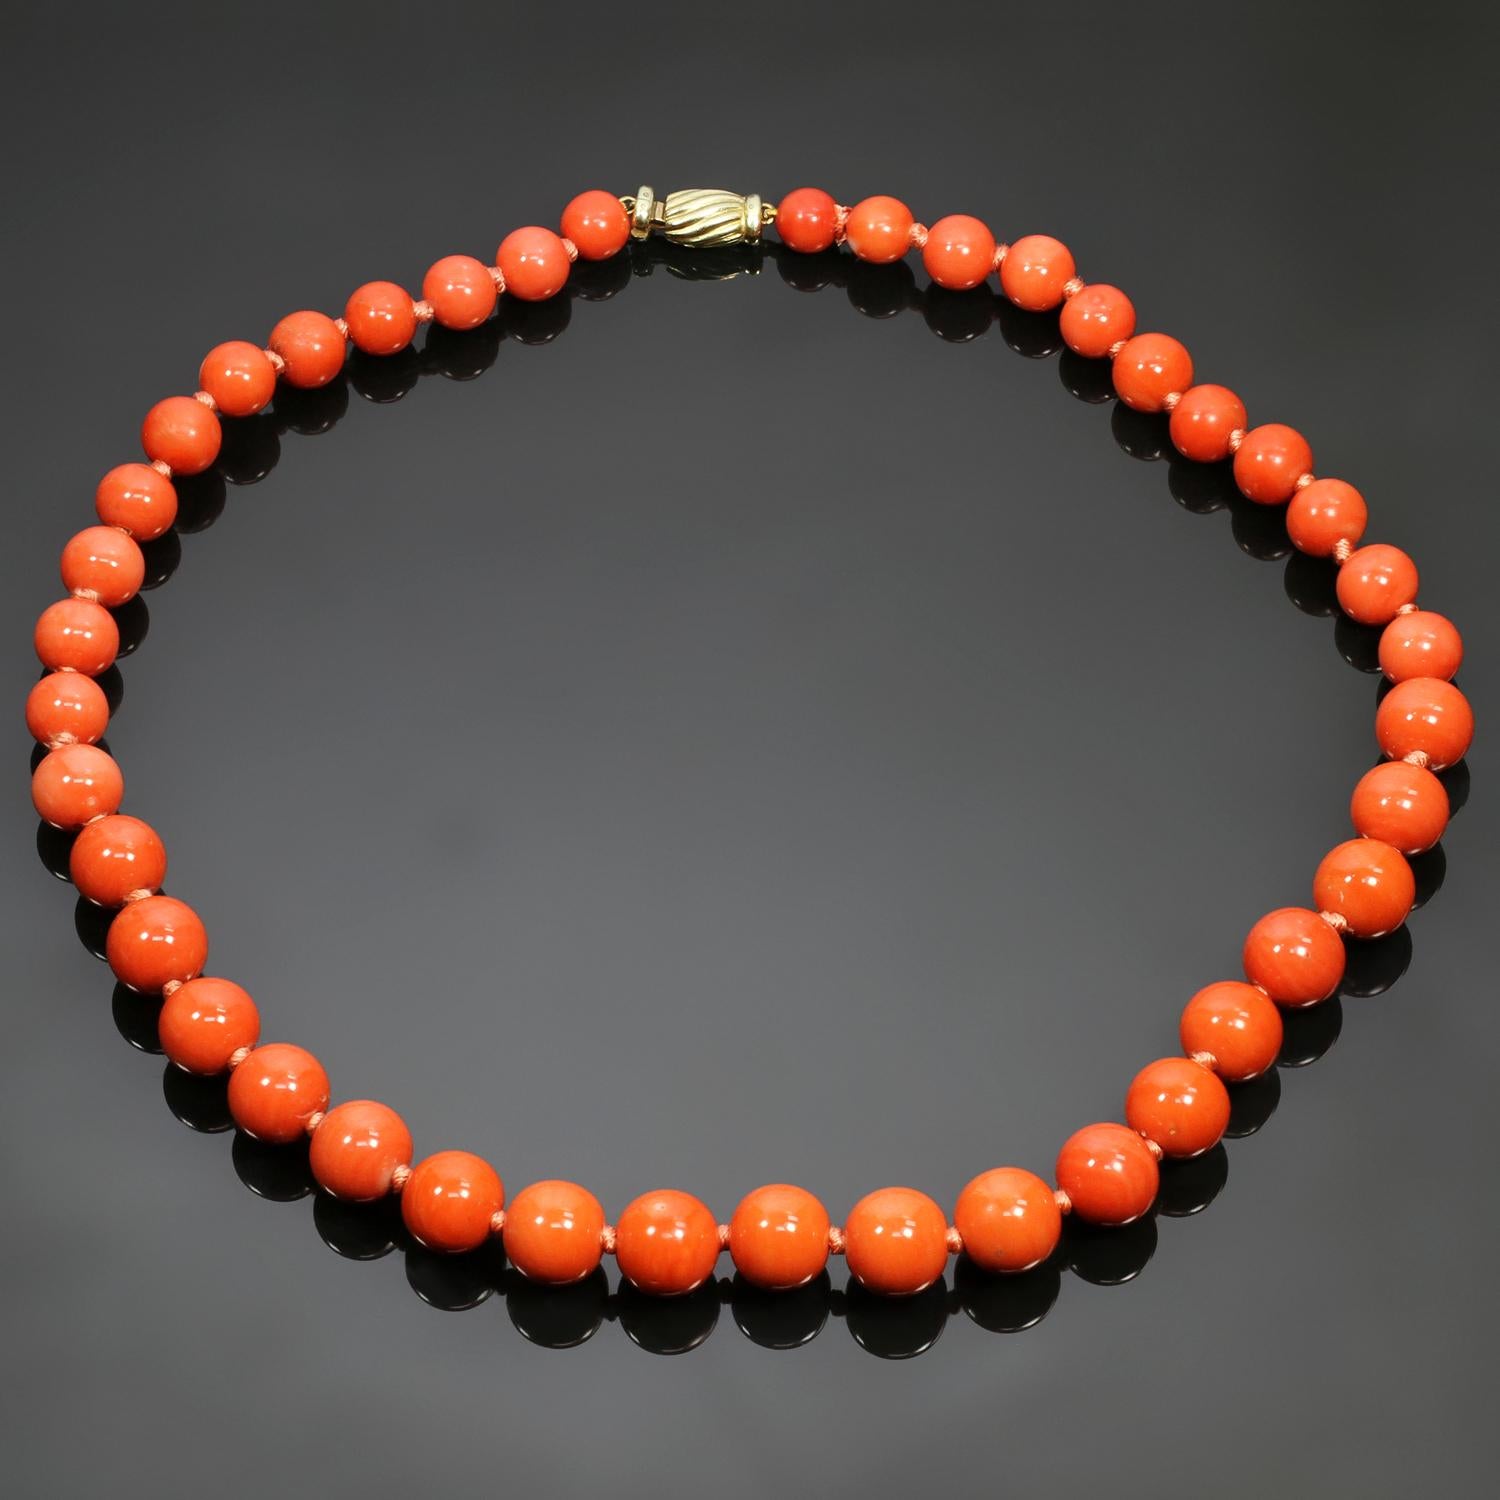 Diese seltene Vintage-Halskette besteht aus echten Korallenperlen, die einen abgestuften Strang bilden und eine Größe von 7,50 mm bis 12,00 mm haben. Der Verschluss aus 14 Karat Gelbgold ist mit einem Diamanten im Einzelschliff verziert. Hergestellt